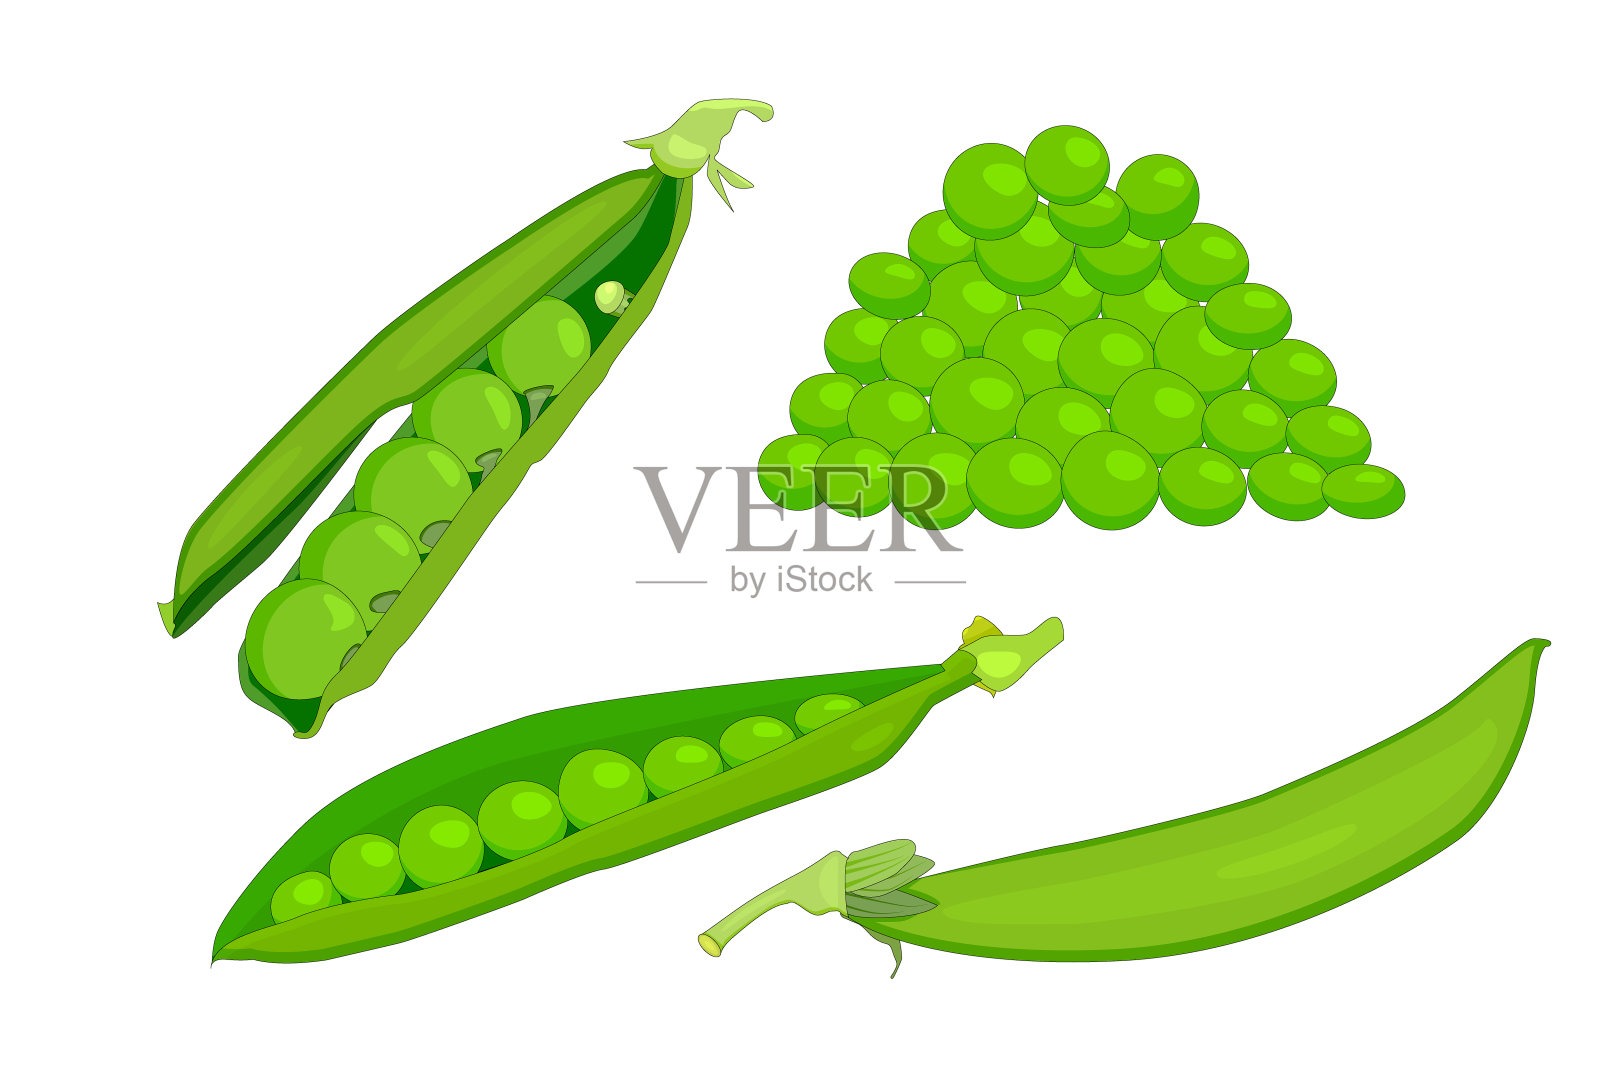 把绿色的豌豆孤立地放在白色的背景上。设计元素图片